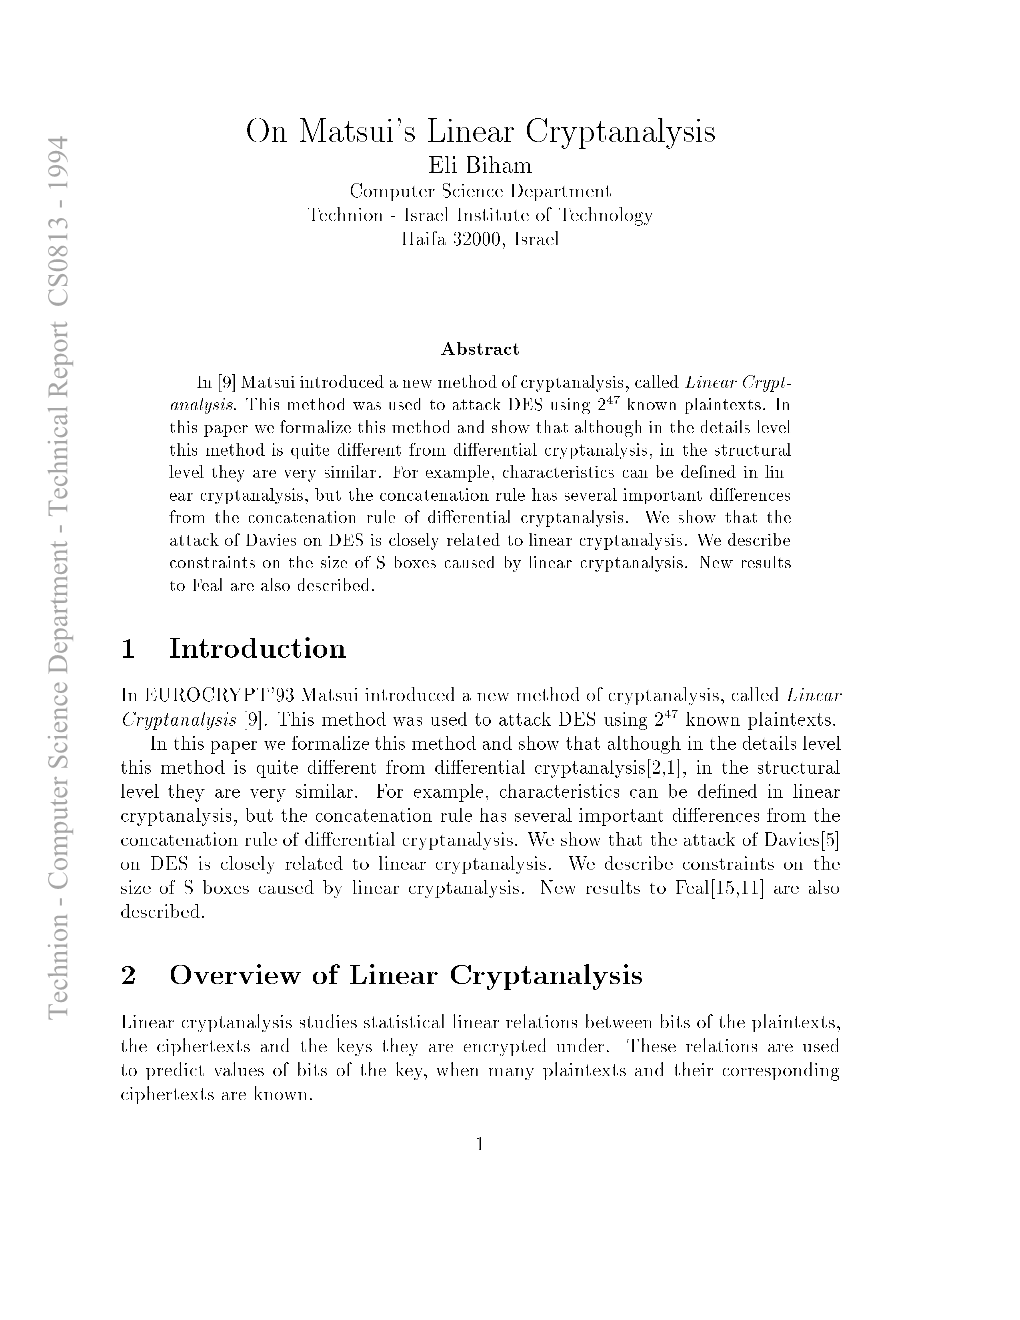 On Matsui's Linear Cryptanalysis